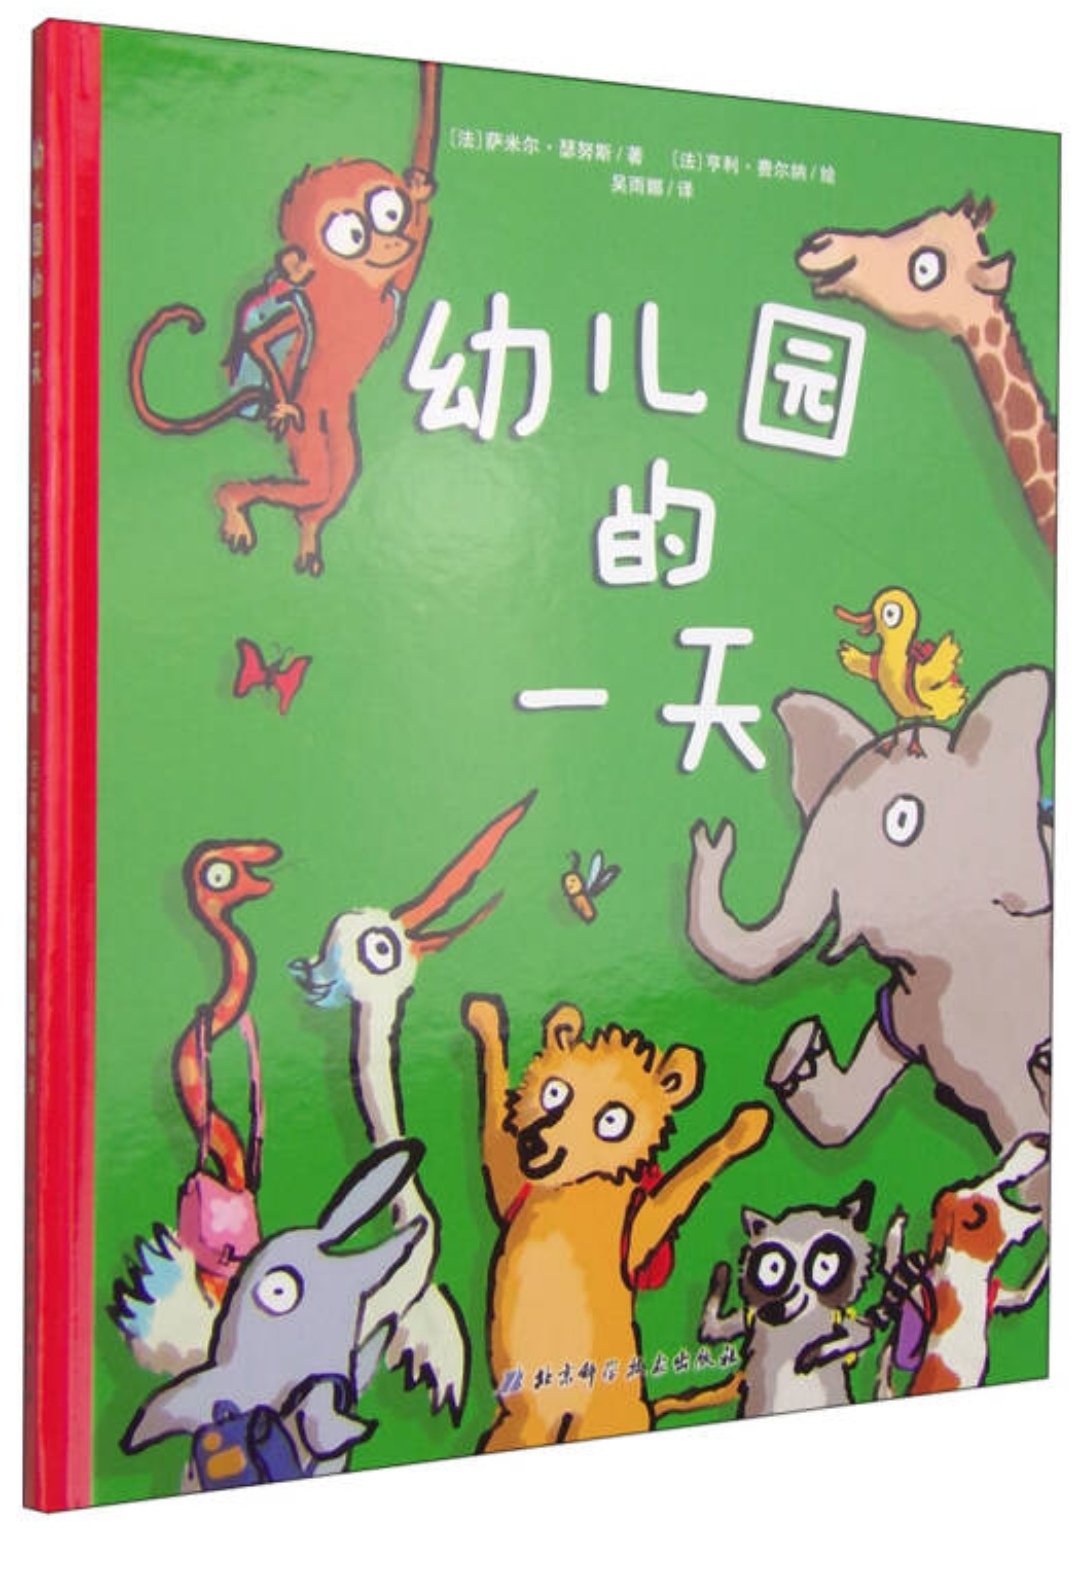 很可爱的书，宝宝很喜欢，作为上幼儿园的启蒙书很实用